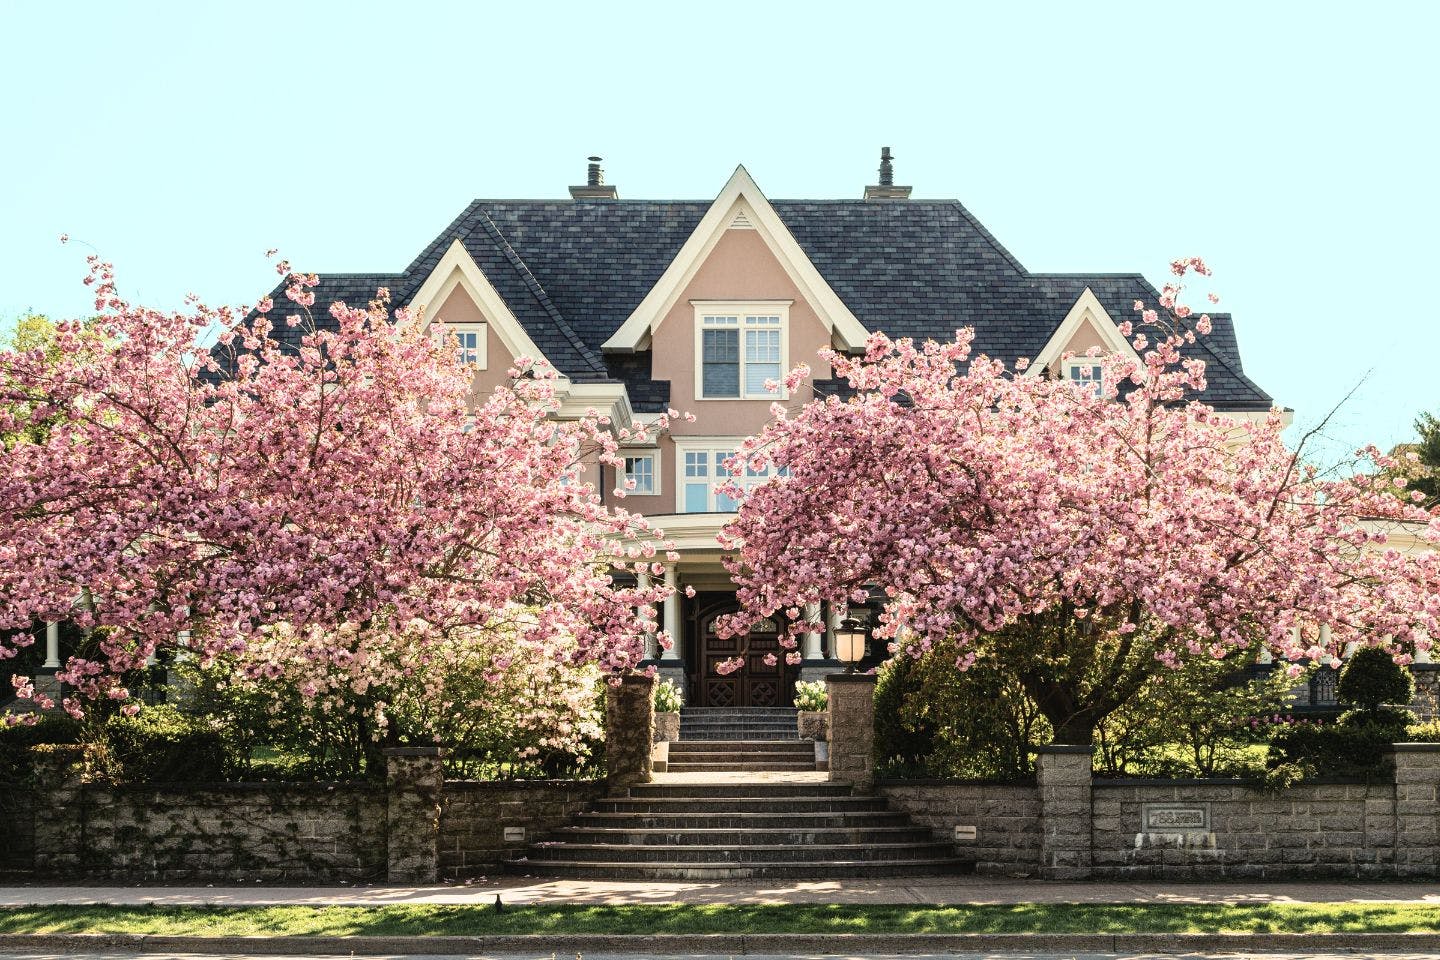 maison rose en arrière plan, avec deux magnifiques cerisiers en fleur au premier plan